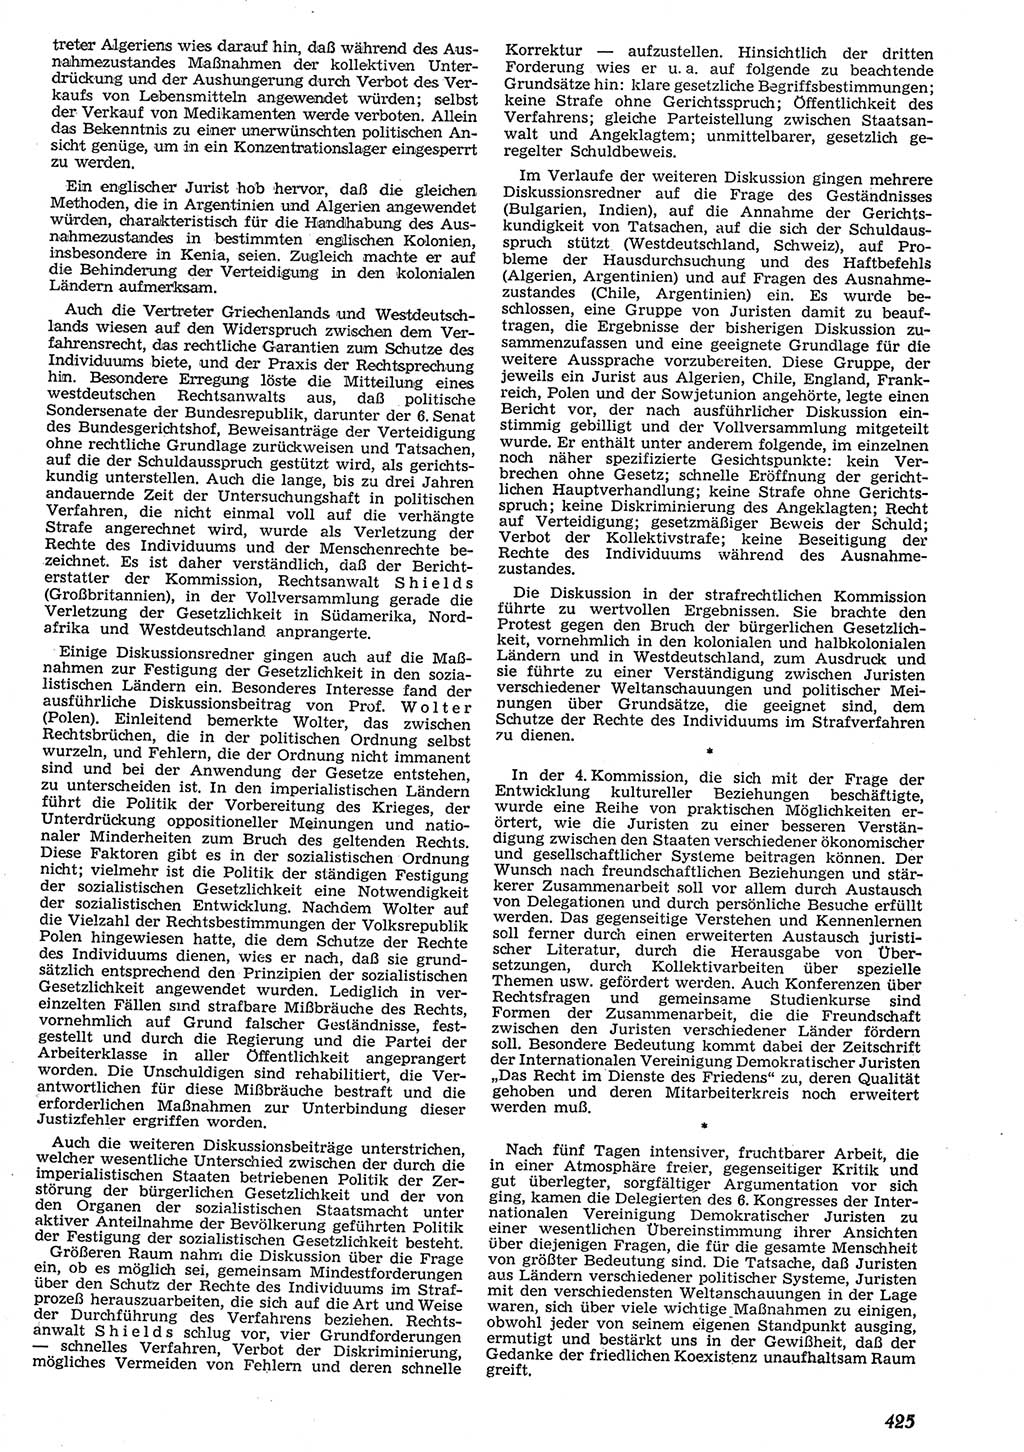 Neue Justiz (NJ), Zeitschrift für Recht und Rechtswissenschaft [Deutsche Demokratische Republik (DDR)], 10. Jahrgang 1956, Seite 425 (NJ DDR 1956, S. 425)